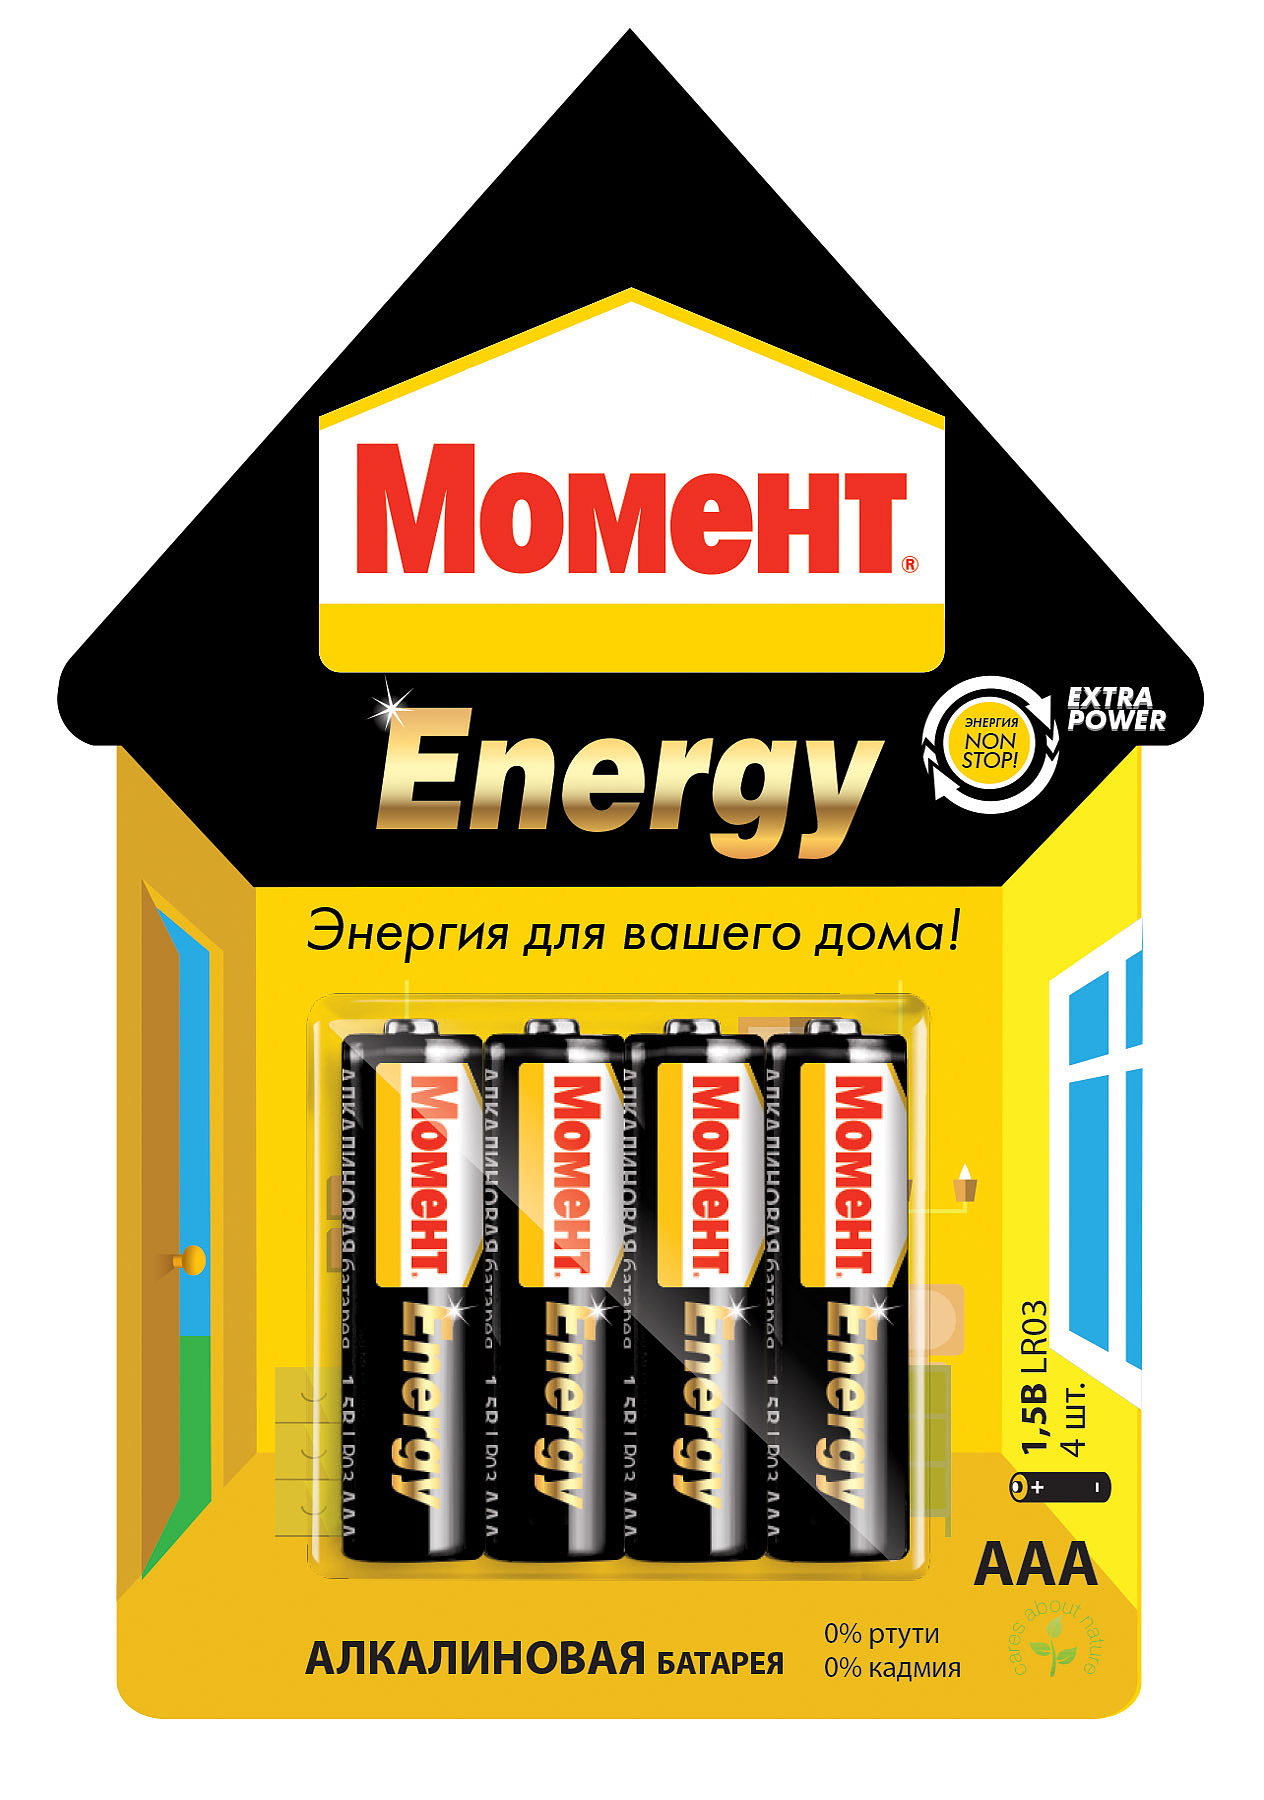    Moment Energy  AAA 1 - 4 . )   1